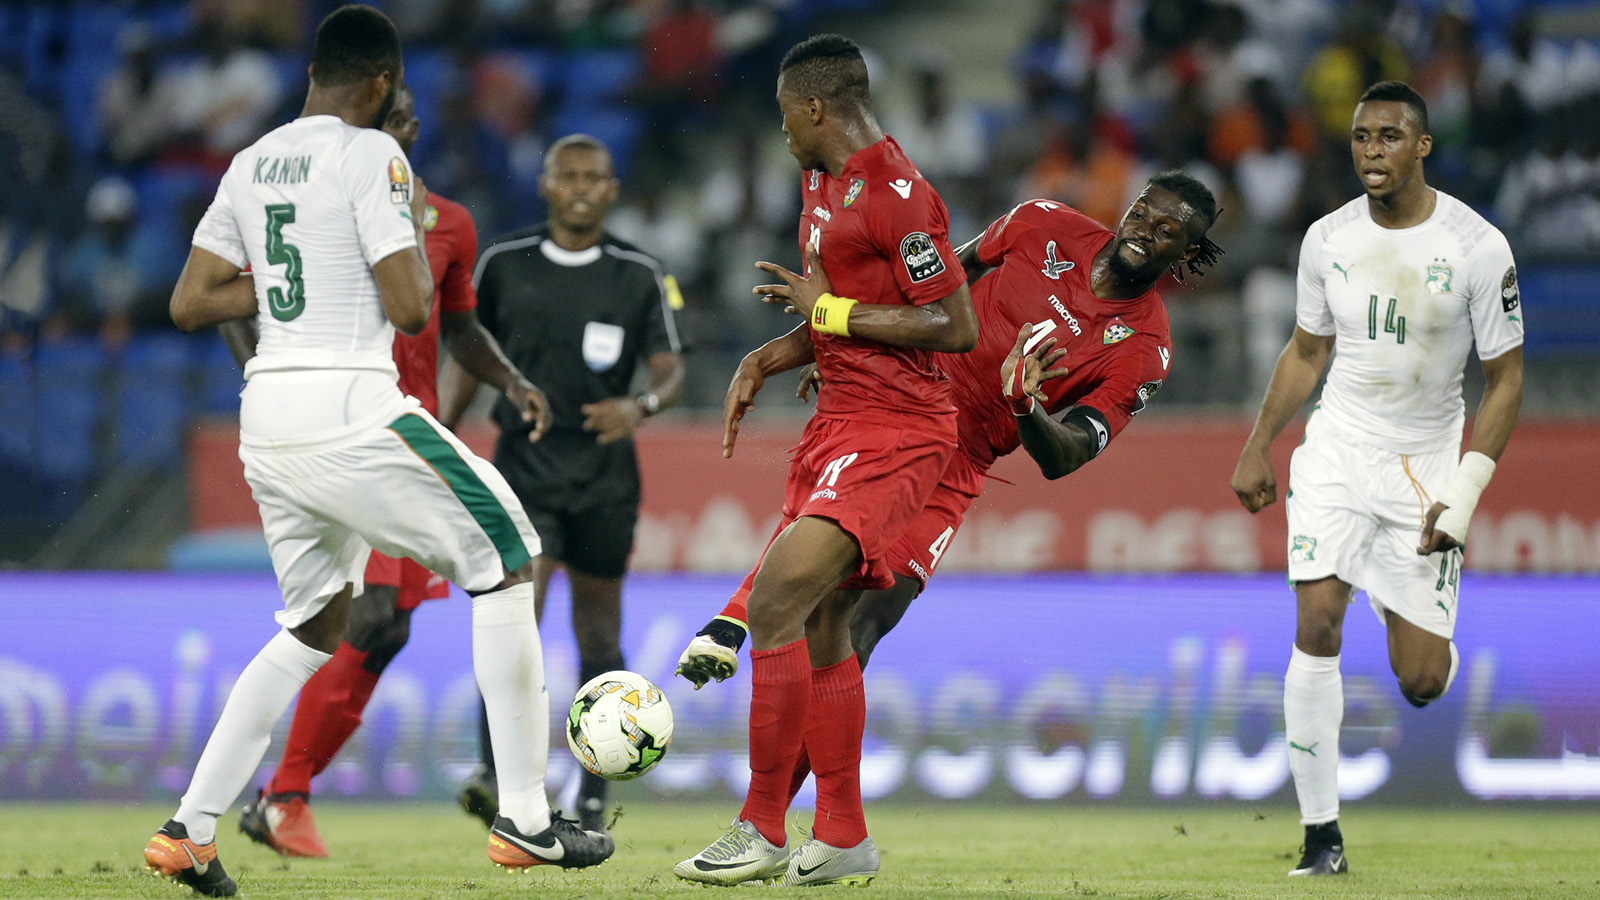 קרב על הכדור בין עמנואל אדביו מנבחרת טוגו לבין וליפרד קאנו מחוף השנהב. אליפות אפריקה בכדורגל (צילום: סוכנות AP).